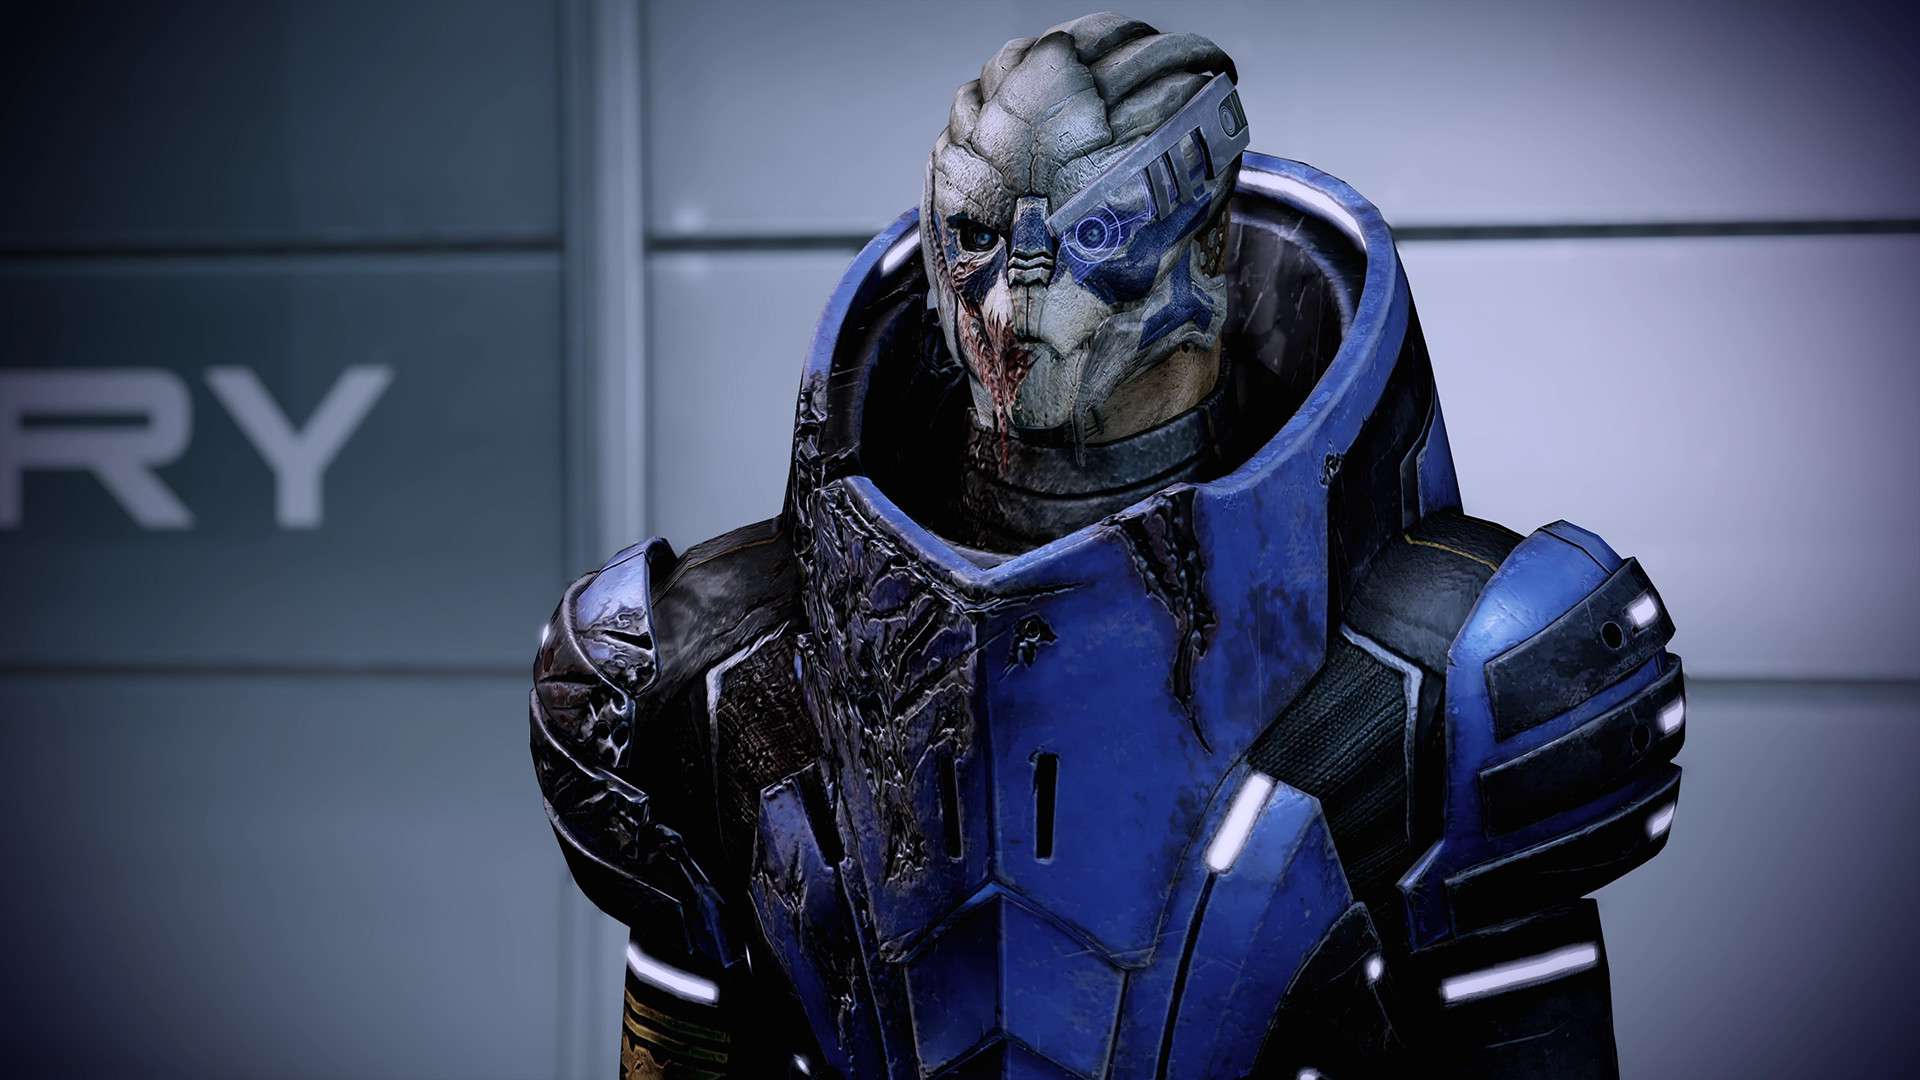 garrus vakarian in Mass Effect